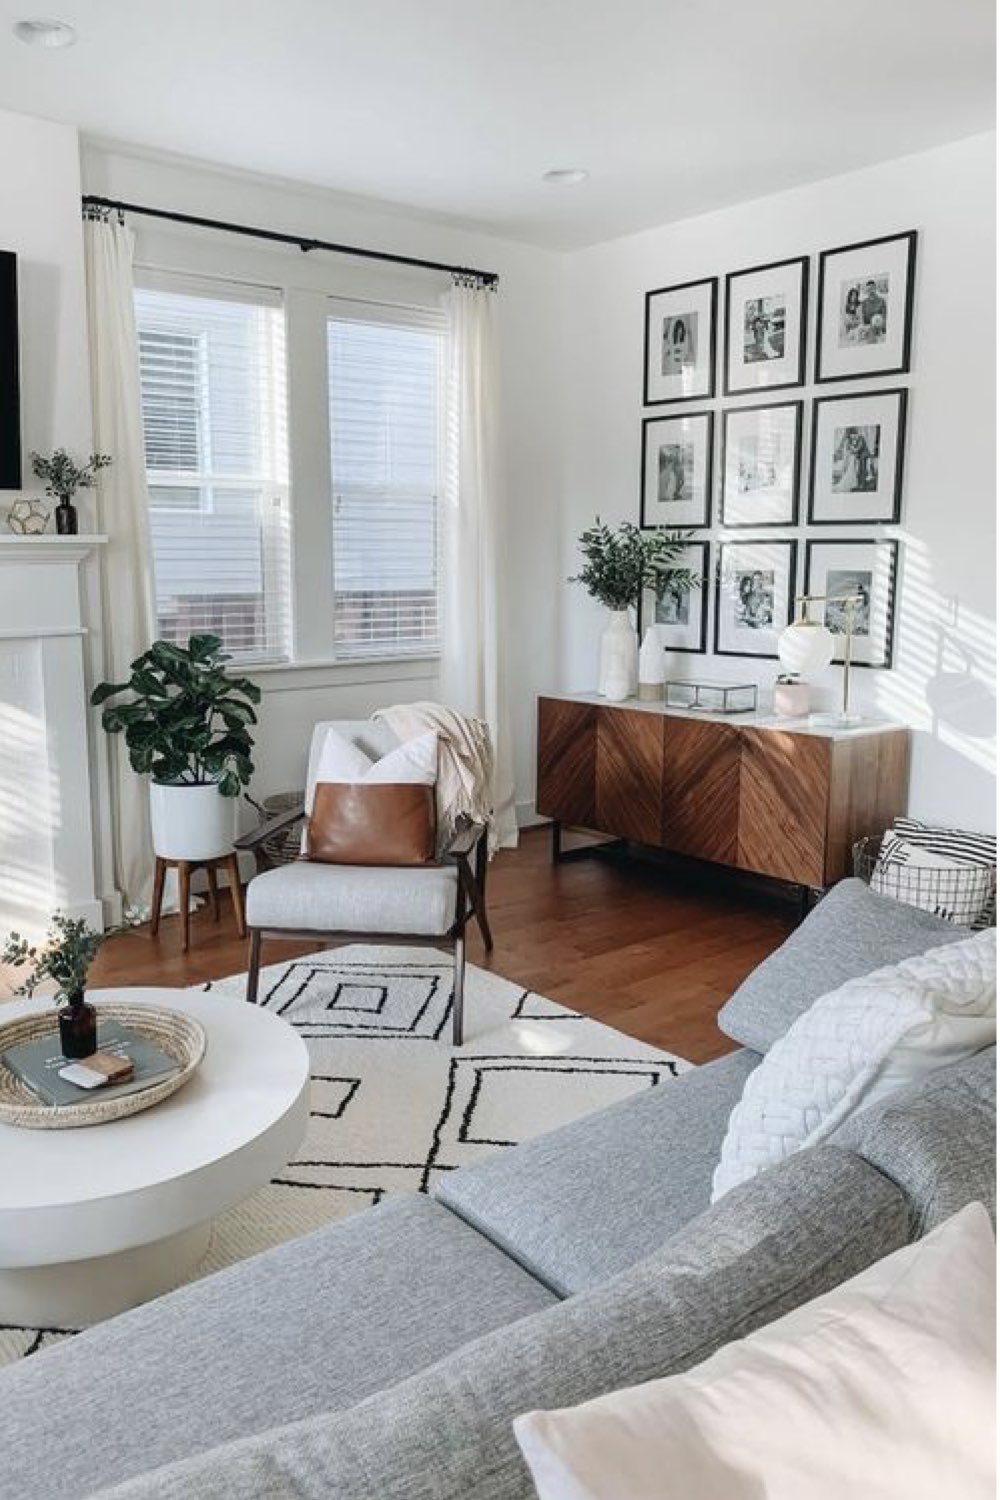 comment reussir deco salon ambiance neutre et chic fauteuil gris tapis noir et blanc enfilade vintage bois cadre photos de famille